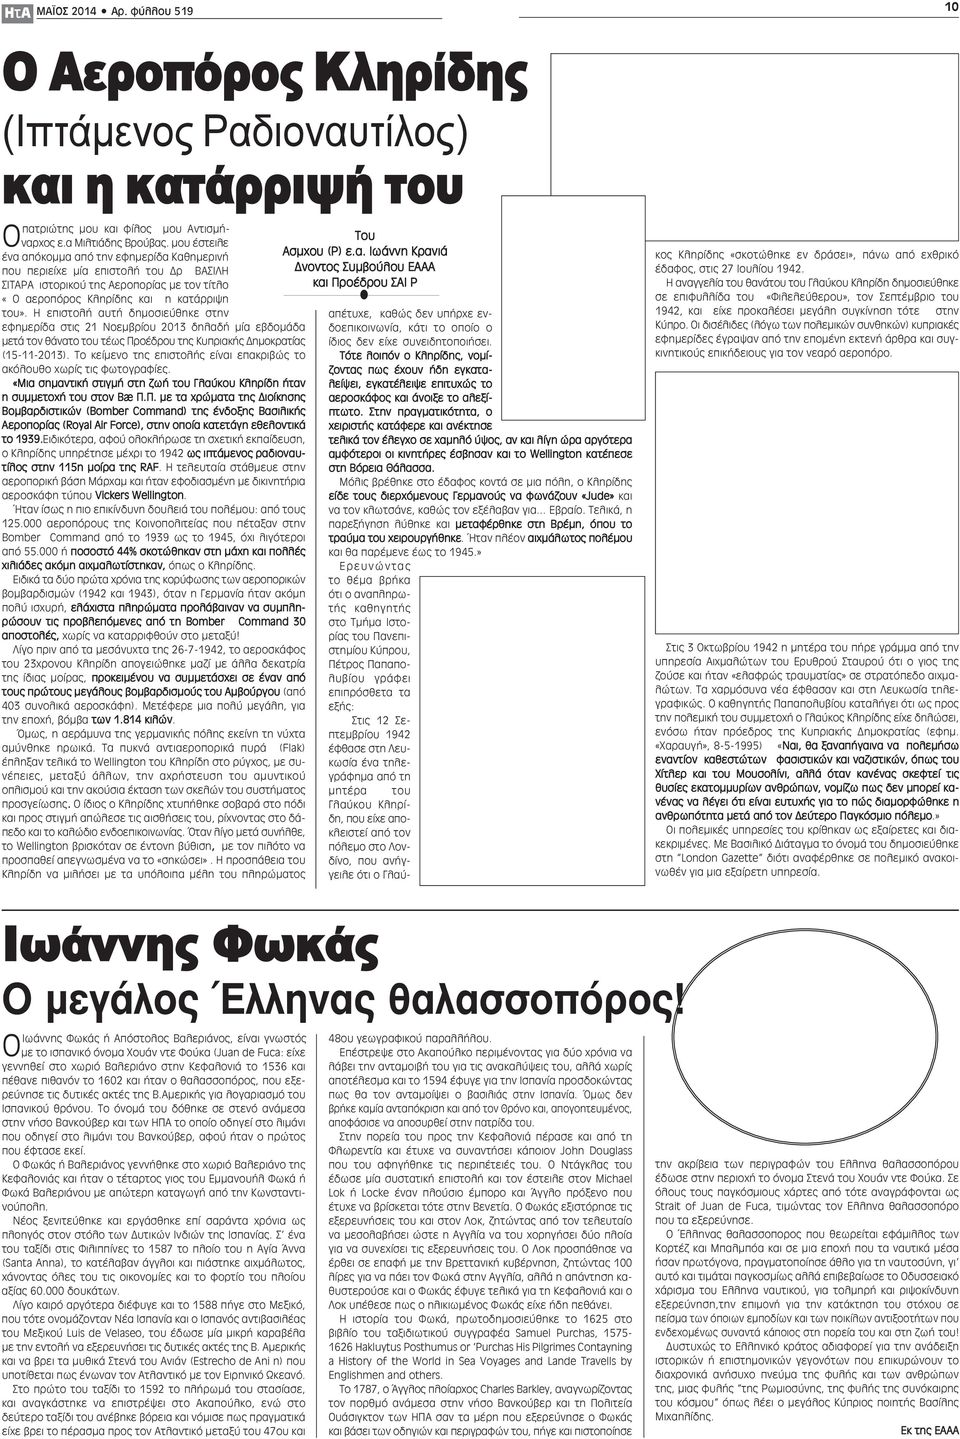 Η επιστολή αυτή δημοσιεύθηκε στην εφημερίδα στις 21 Νοεμβρίου 2013 δηλαδή μία εβδομάδα μετά τον θάνατο του τέως Προέδρου της Κυπριακής Δημοκρατίας (15-11-2013).